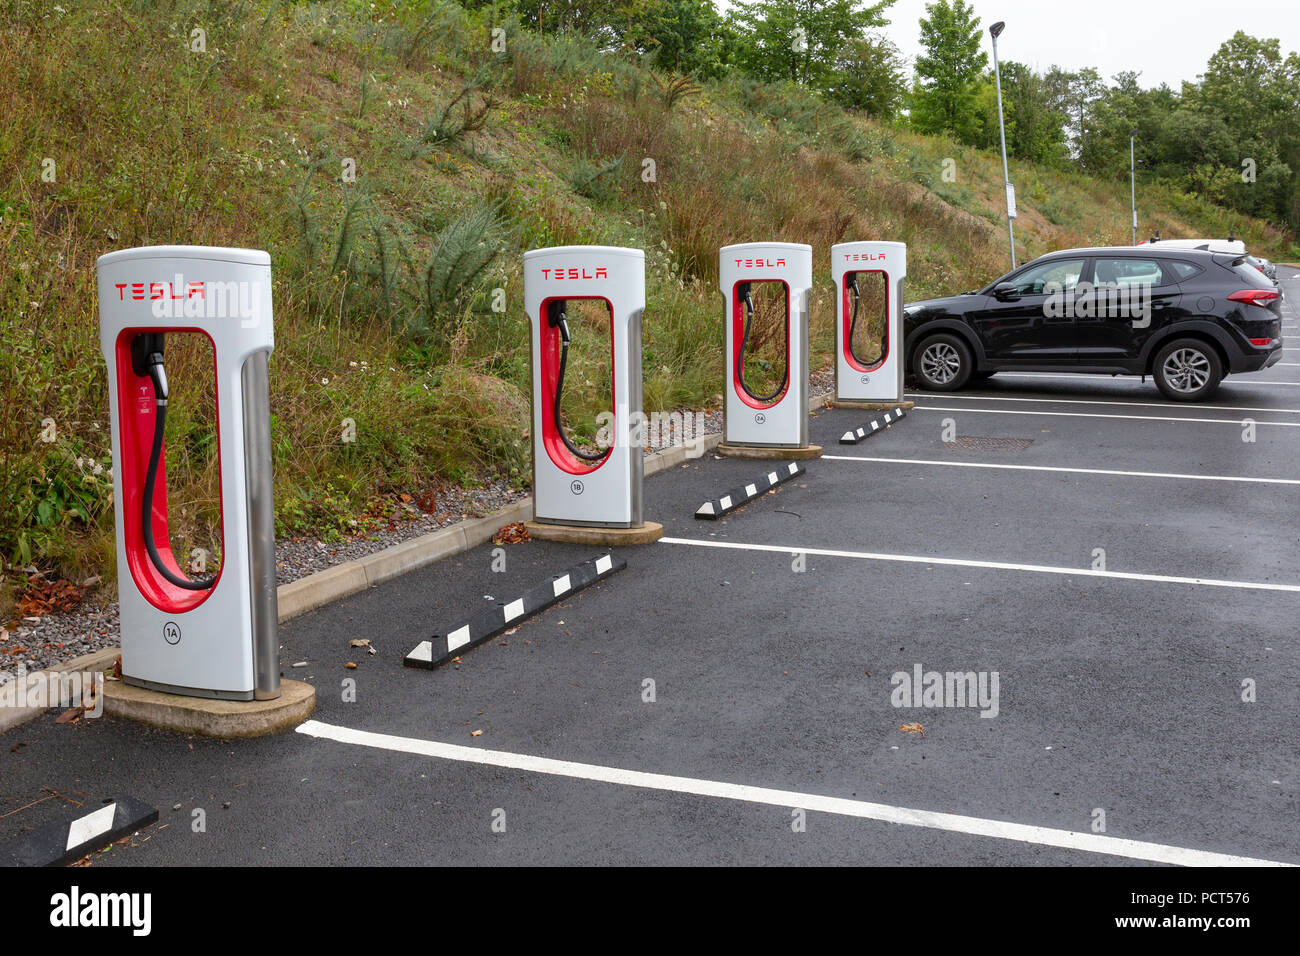 SARN, Großbritannien - 2 August, 2018: eine Reihe von Tesla Superchargers neben leeren Parkplätze an der Sarn Park Autobahn Dienstleistungen aus der M4 in der Nähe von Bri Stockfoto